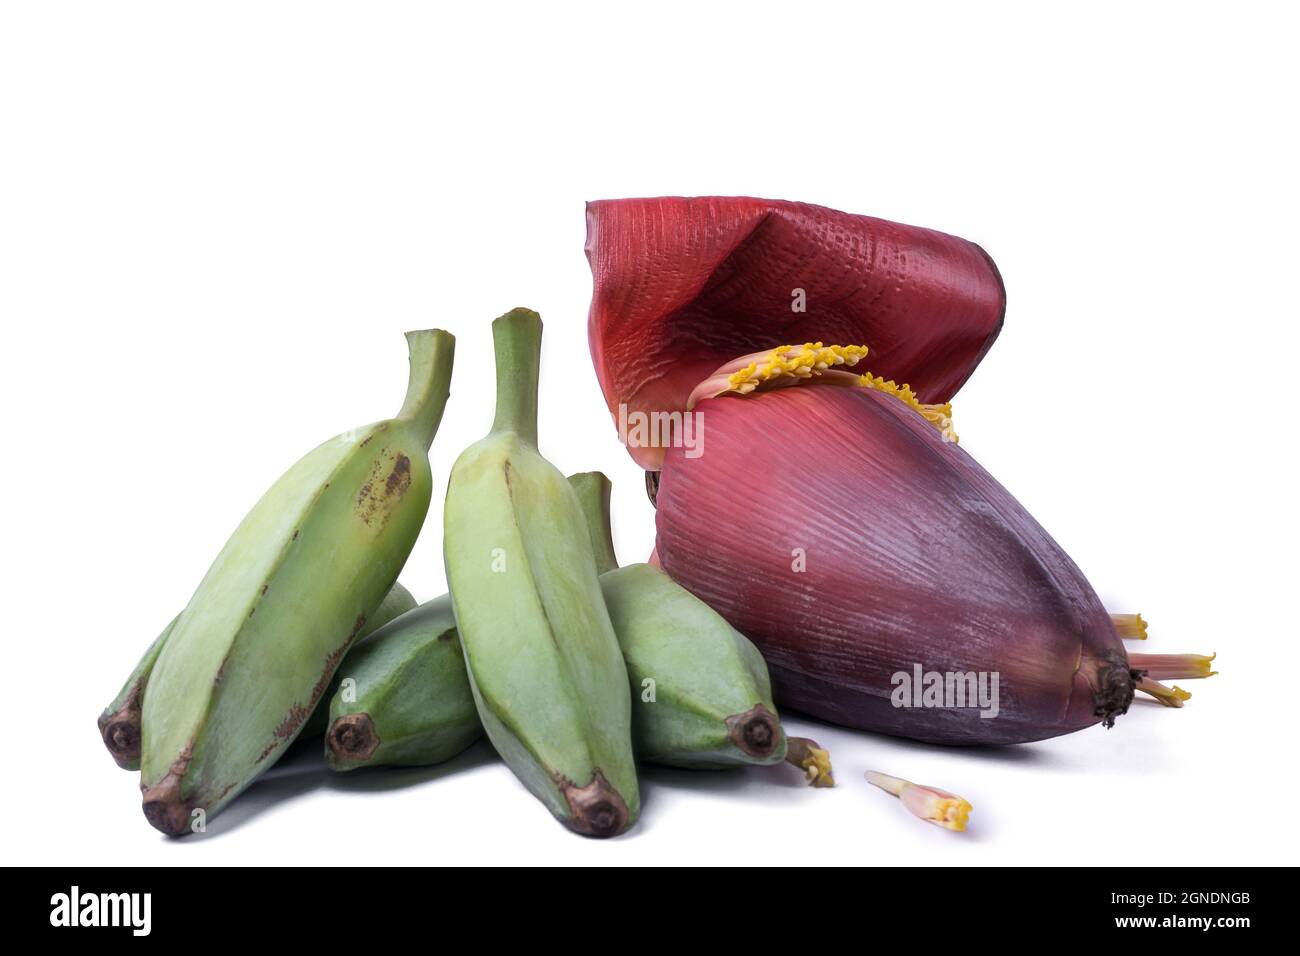 plantains de frêne ou banane verte brute avec fleur de banane également connu sous le nom de fleur de banane, légumes isolés sur fond blanc, vue rapprochée Banque D'Images